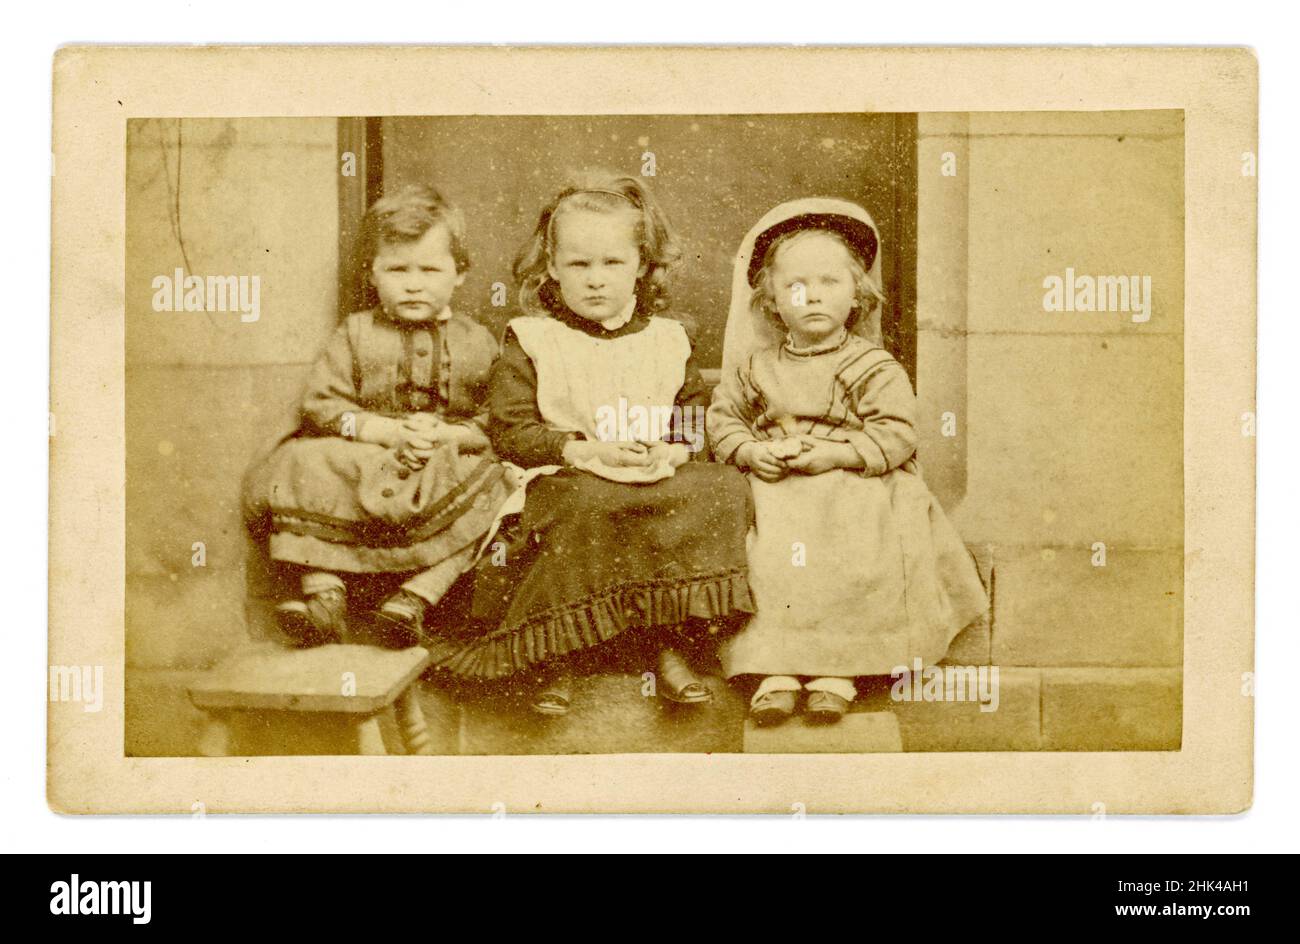 Original viktorianische Carte de Visite (CDV) oder Visitenkarte, von 3 kleinen Kindern, die auf einer Stufe vor einem großen Haus sitzen und jeweils einen Apfel halten. Alle tragen Kleider. Das Kind auf der linken Seite scheint ein Junge zu sein - es war normal, junge Jungen in Mädchenkleidung zu kleiden in viktorianischen Zeiten. Circa 1860, Großbritannien Stockfoto